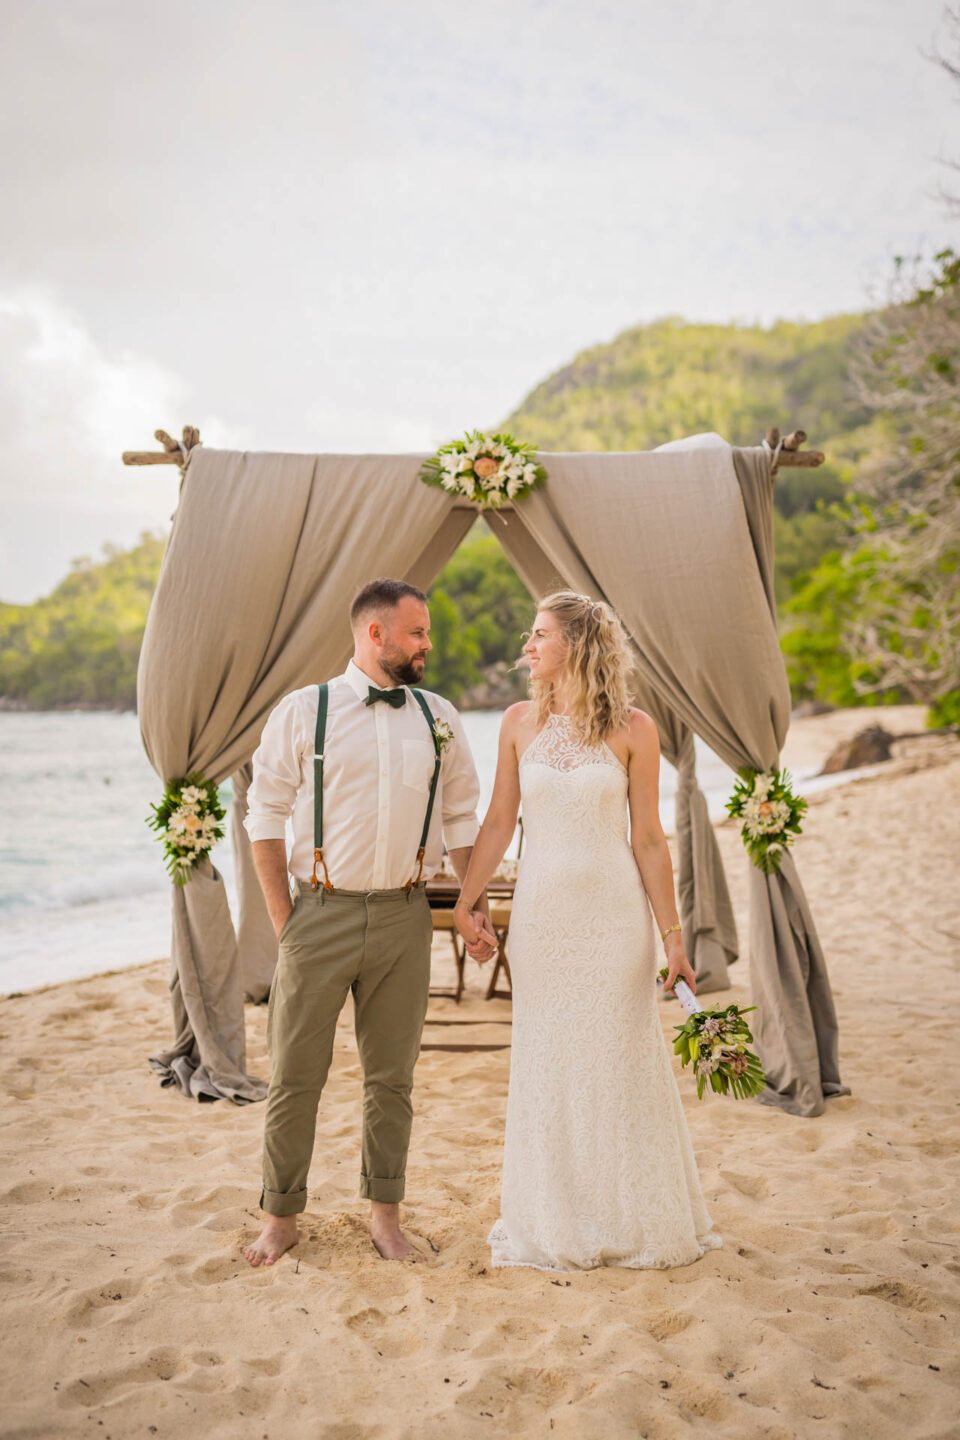 Brautpaar am Strand auf Mahé bei Destination Wedding auf den Seychellen